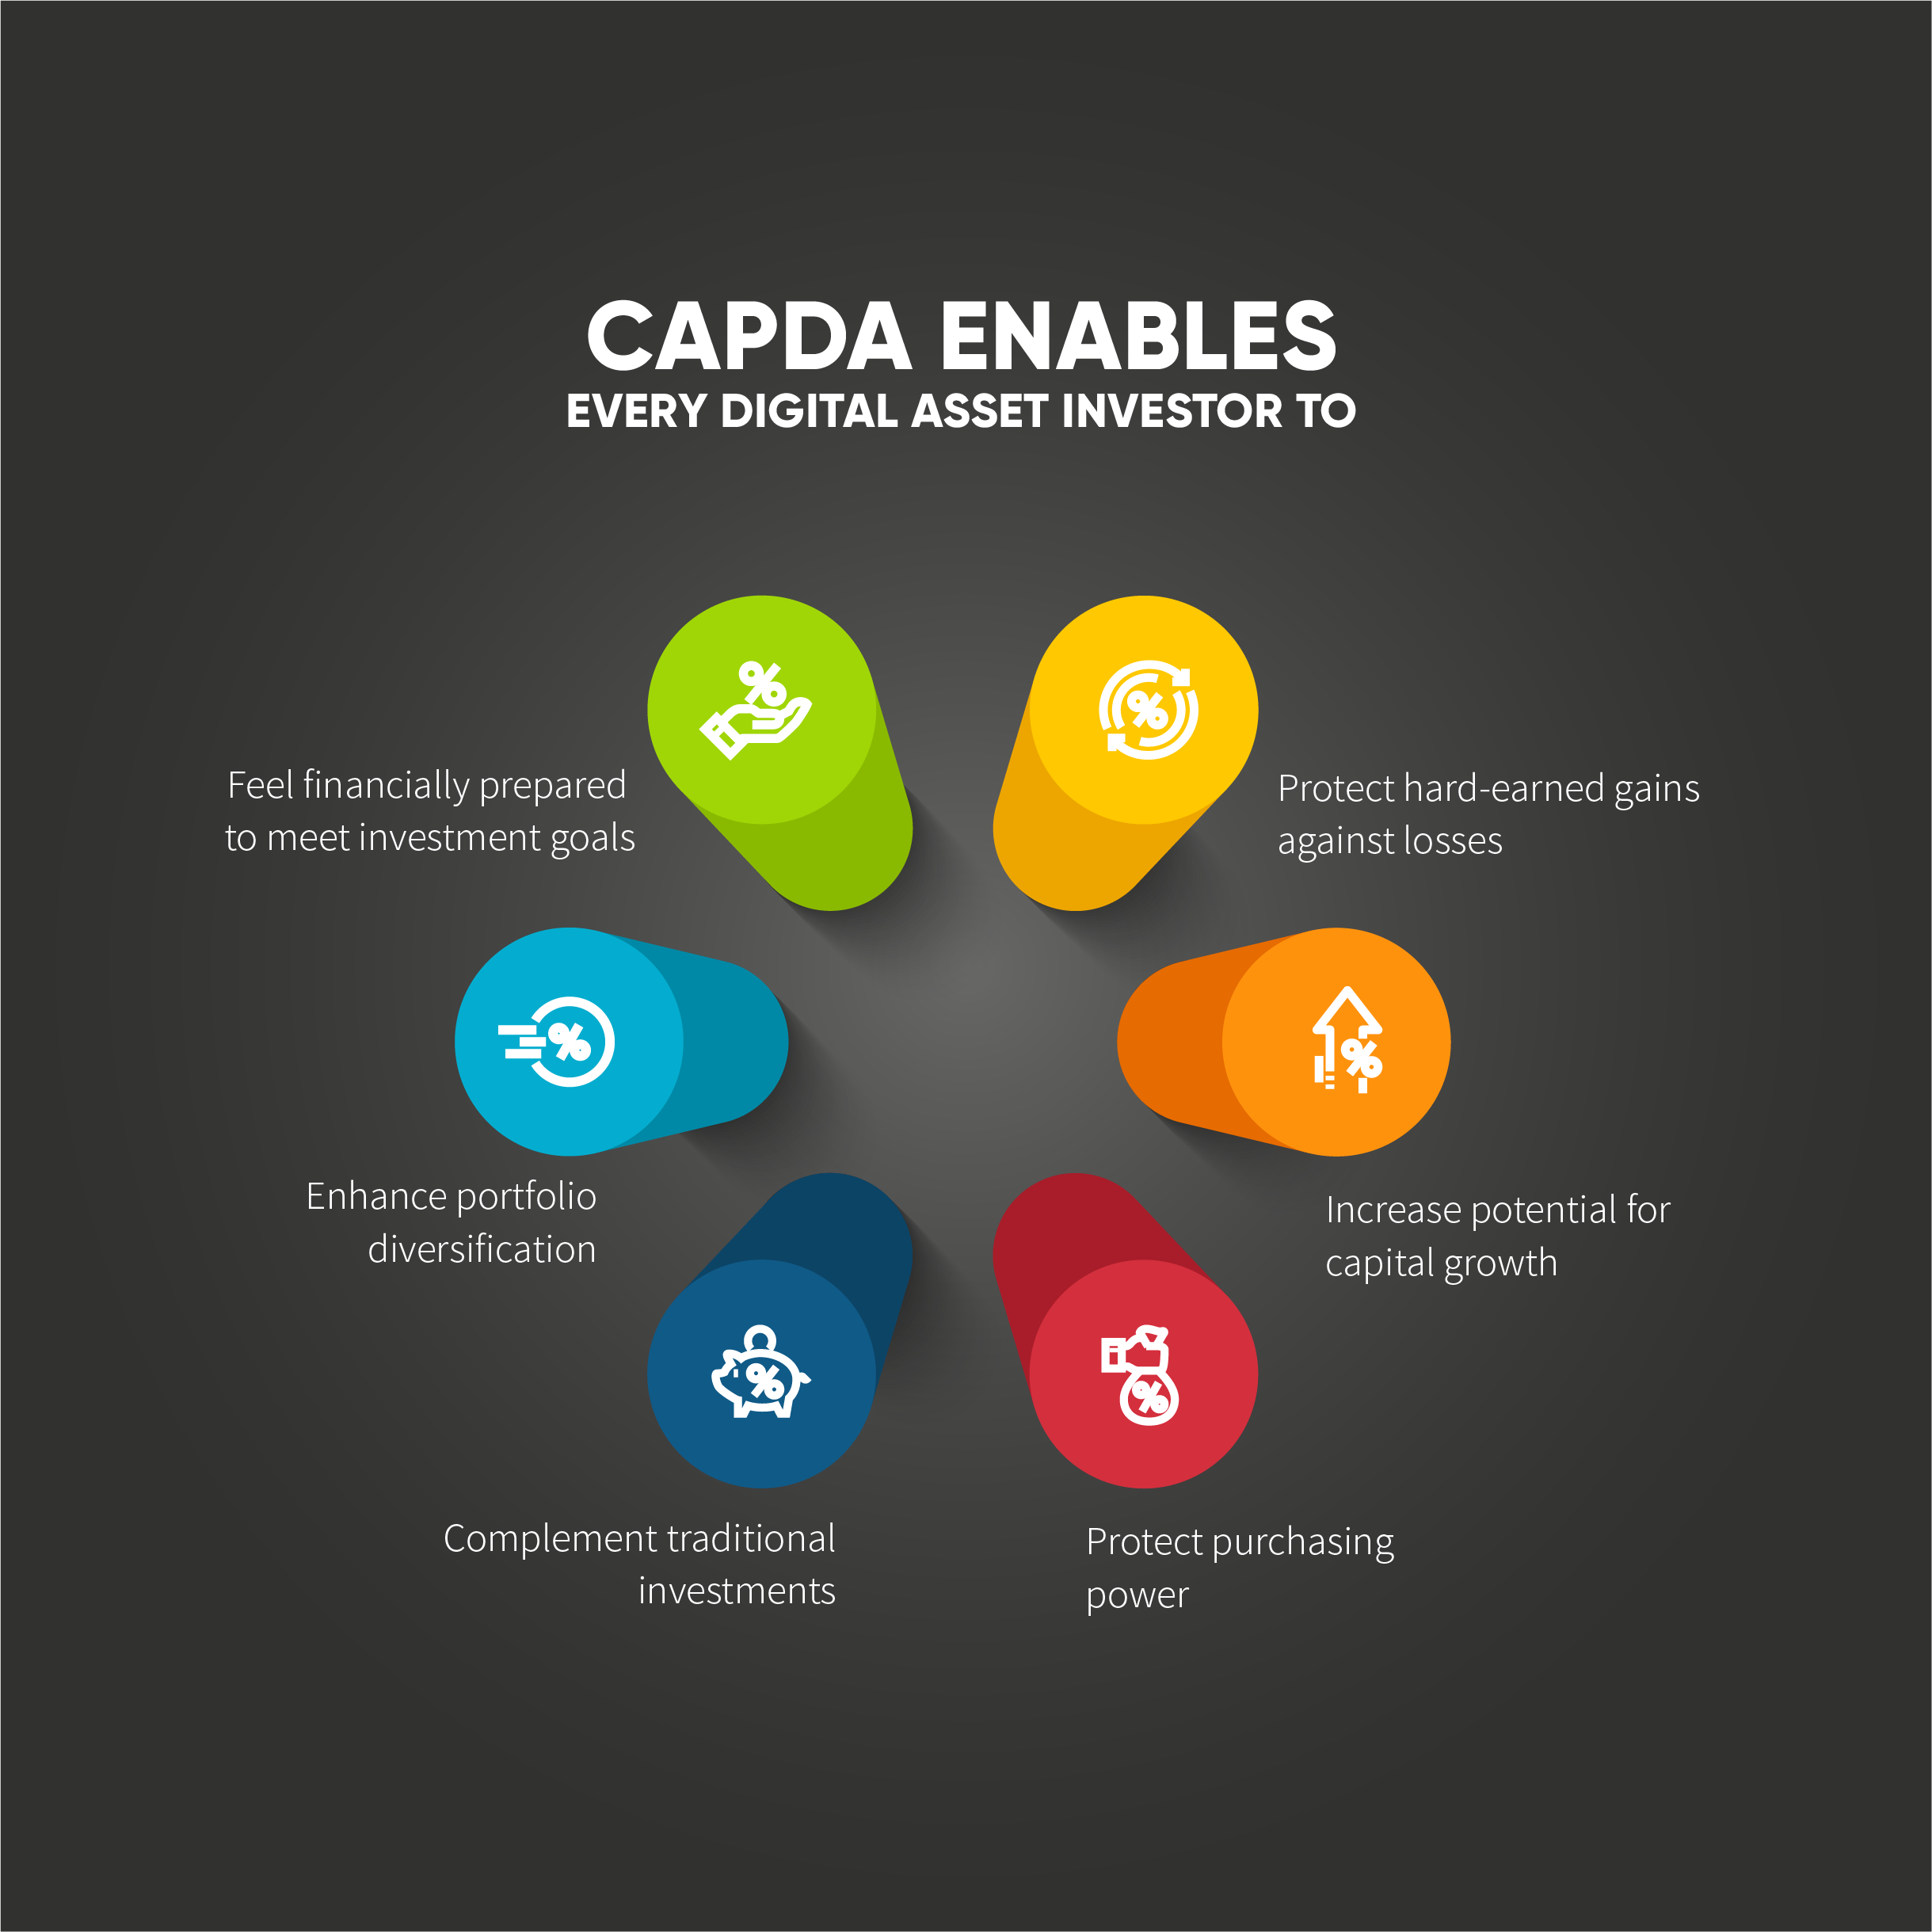 CAPDA enables